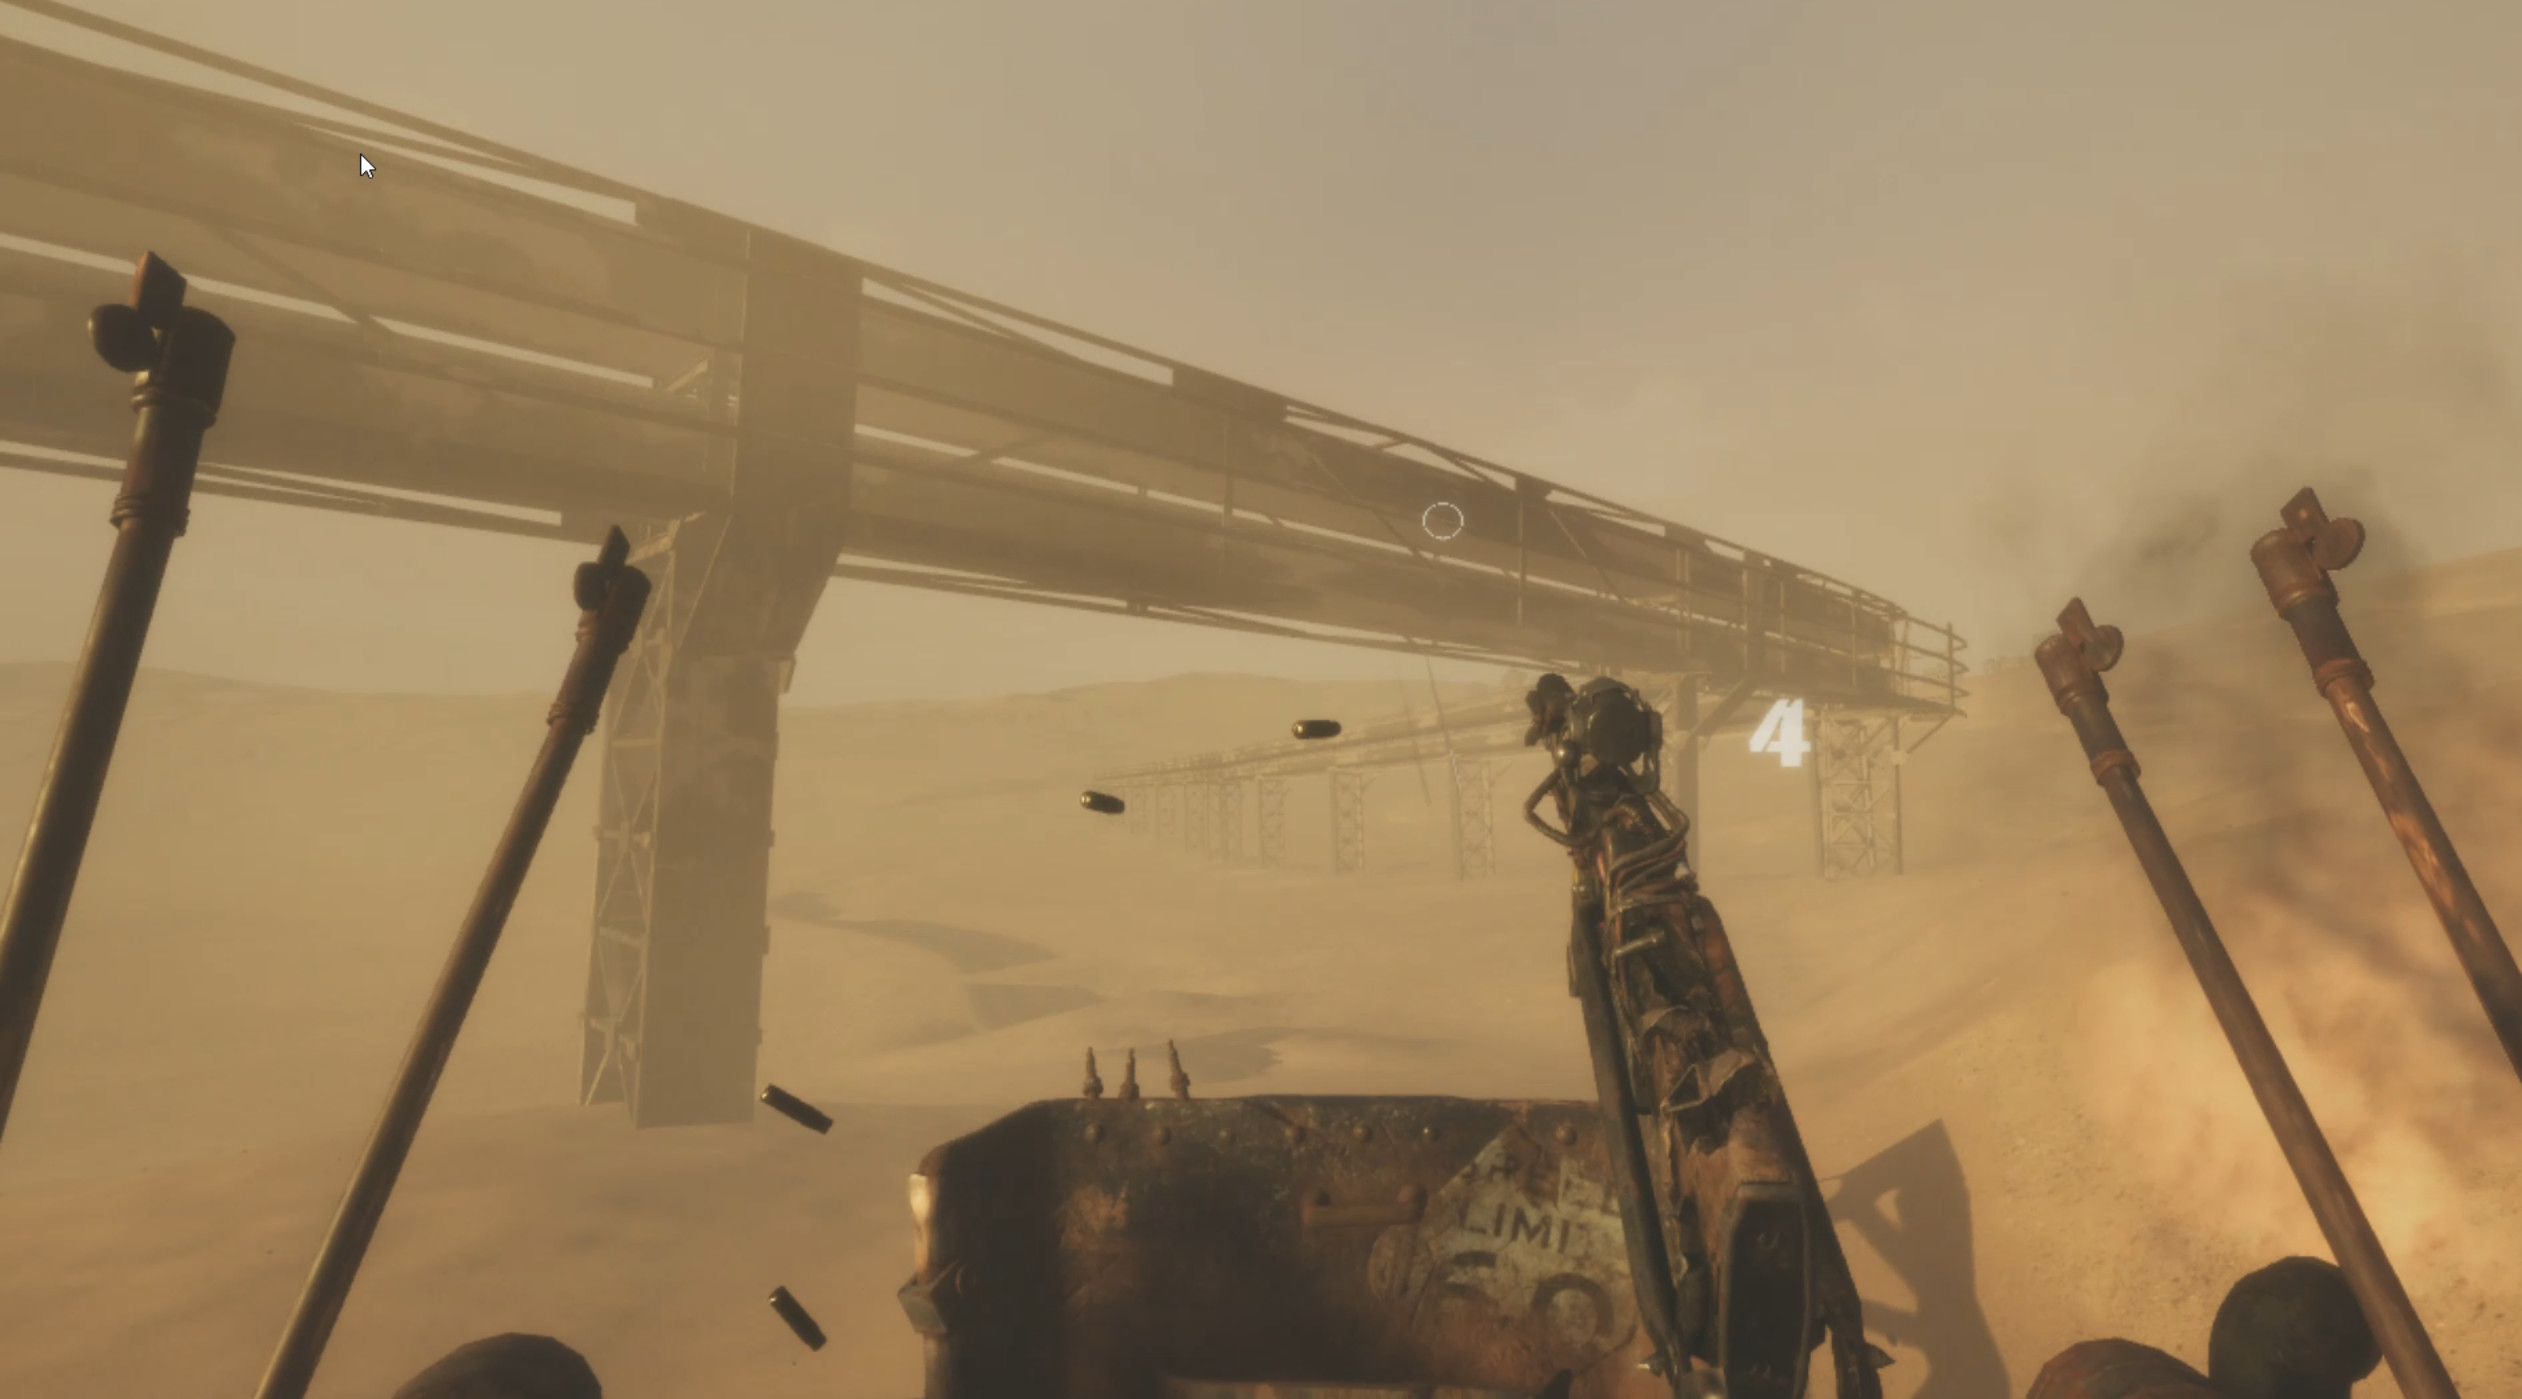 Desert Raider screenshot